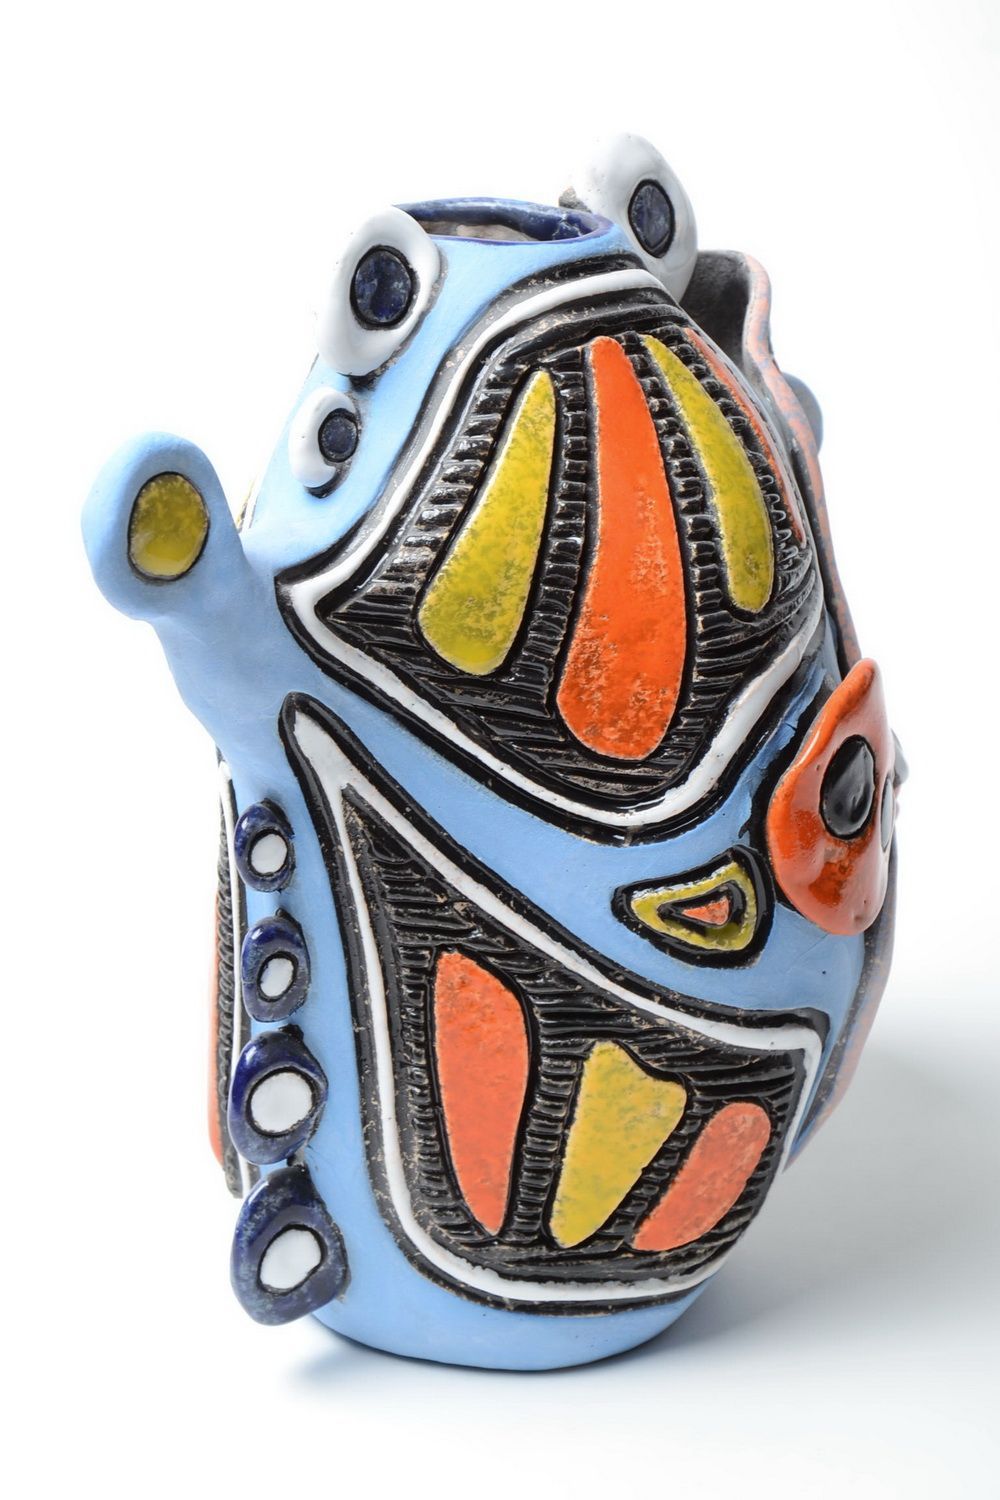 Farbige Ton Vase handmade in Form vom Fisch mit Pigmenten bemalt 1.8 L foto 3